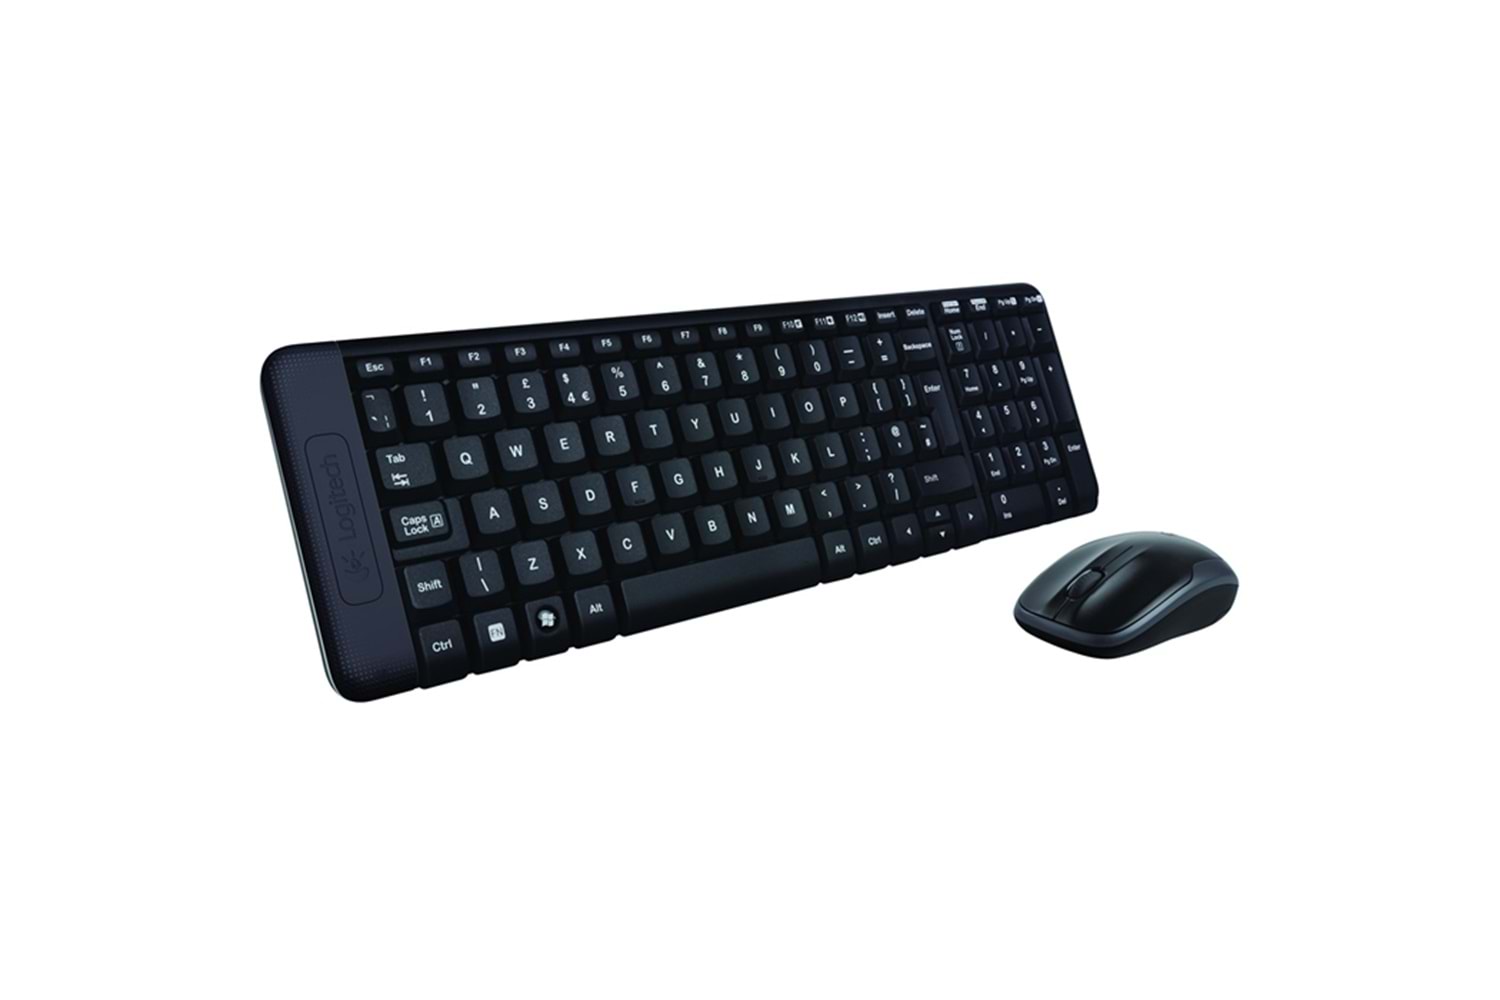 Logitech MK220 920-003163 Kablosuz Q Klavye Mouse Set